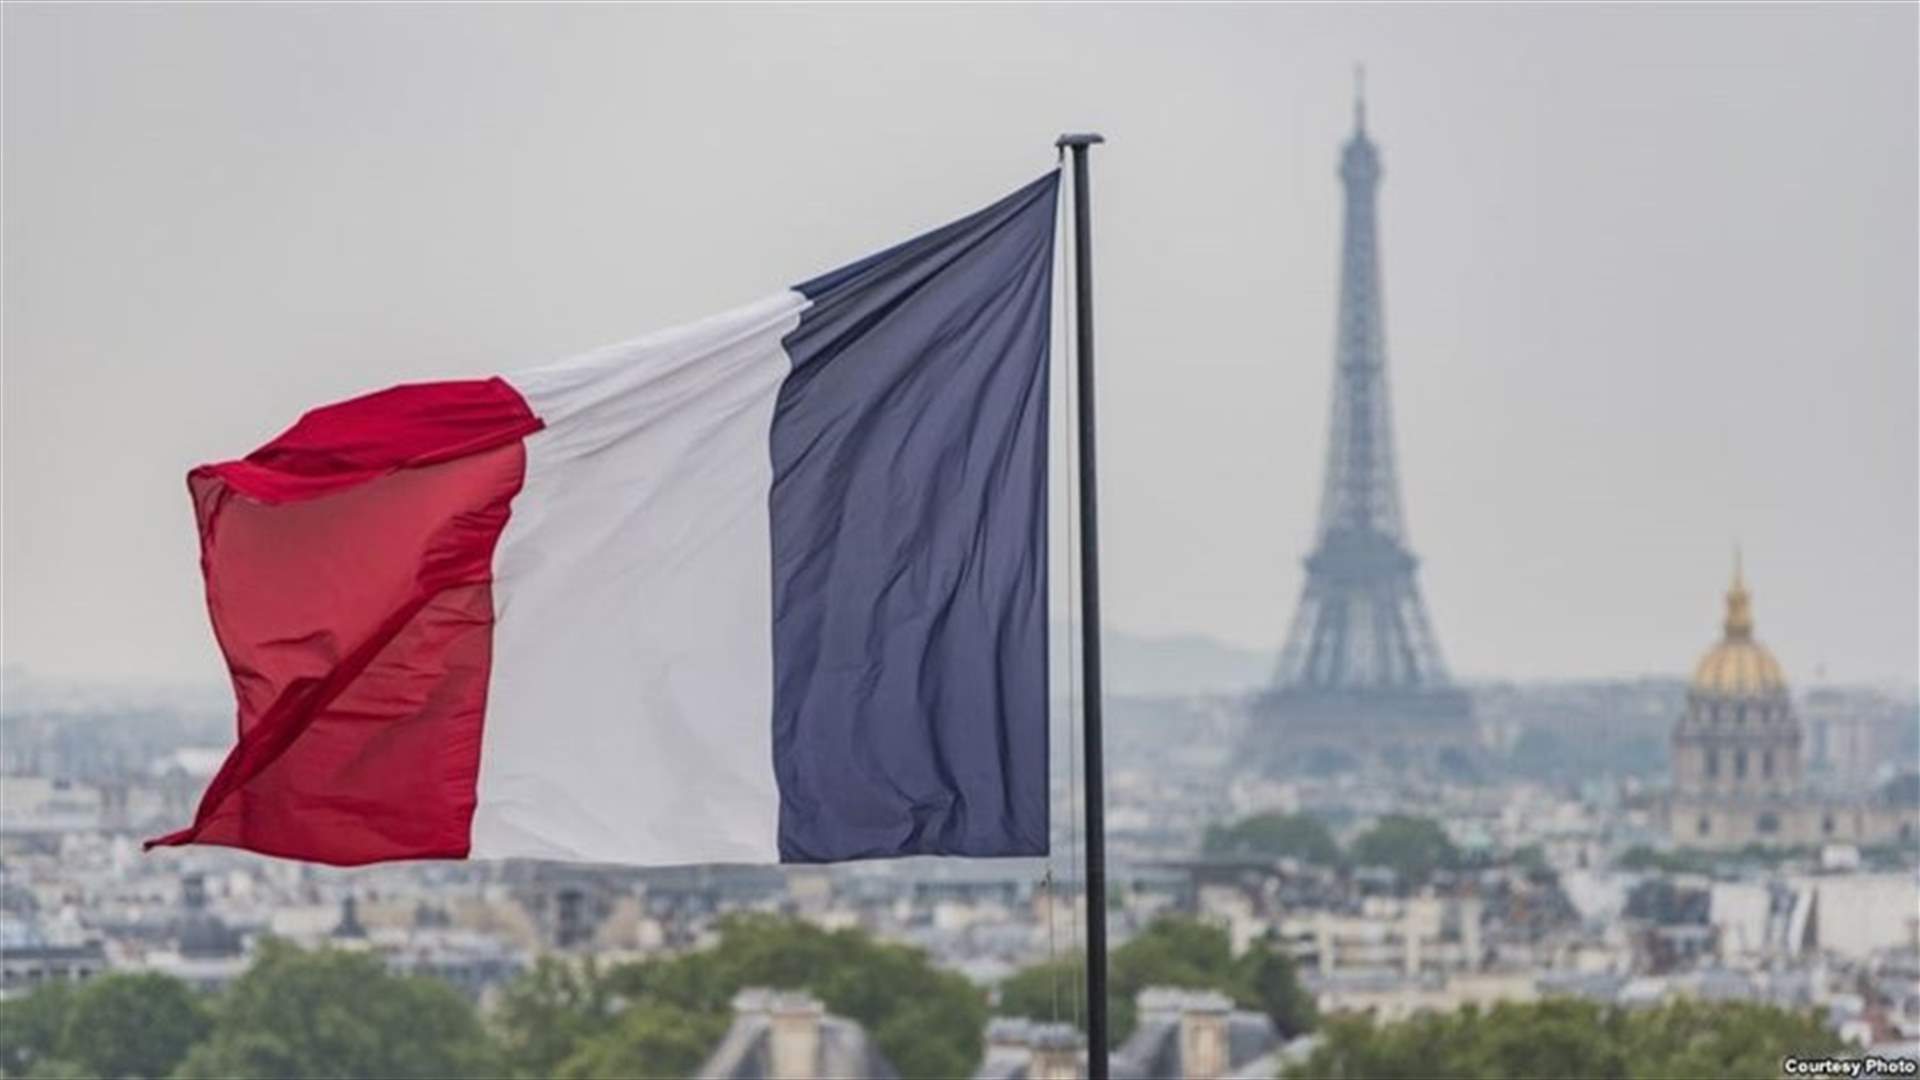 النيابة العامة الفرنسية توجّه إلى منفّذ هجوم باريس تهم &quot;محاولات قتل&quot; إرهابية